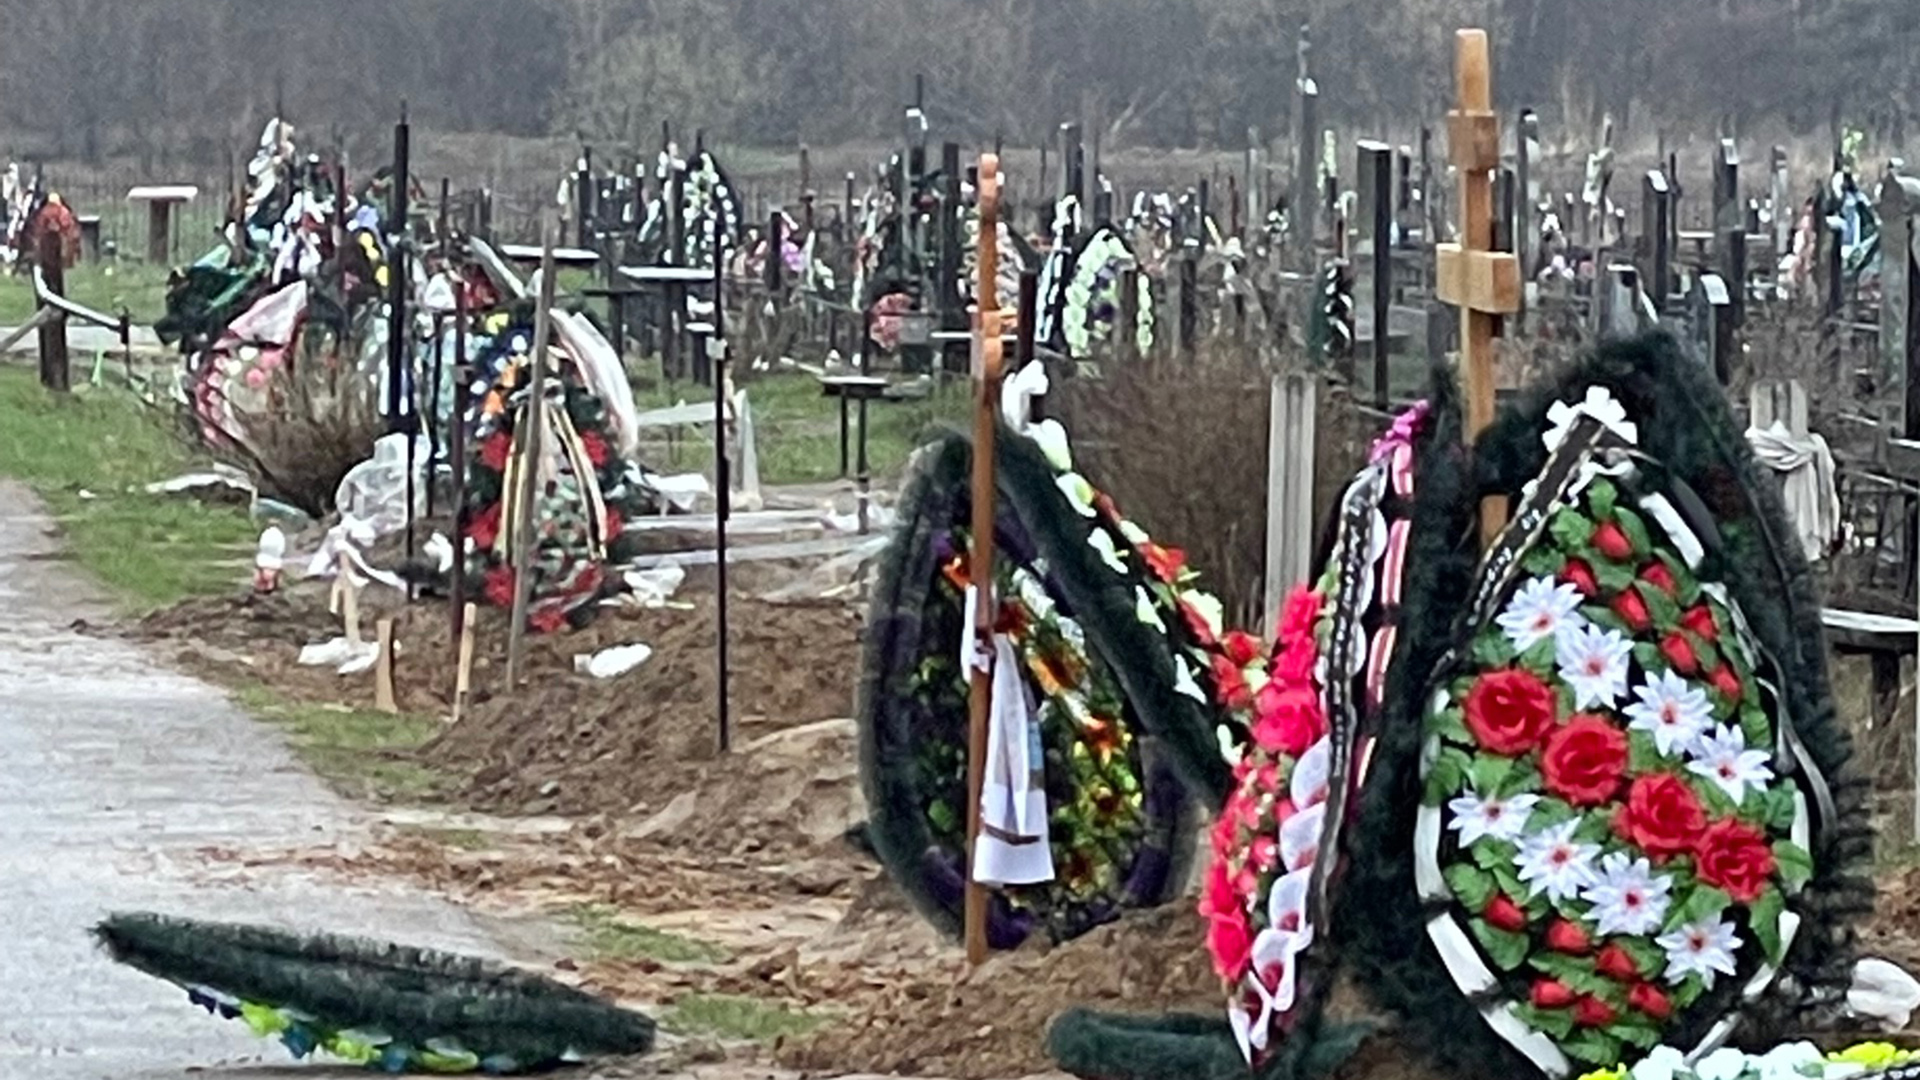 Frische Gräber auf dem Friedhof von Butscha, Ukraine. | Silke Diettrich